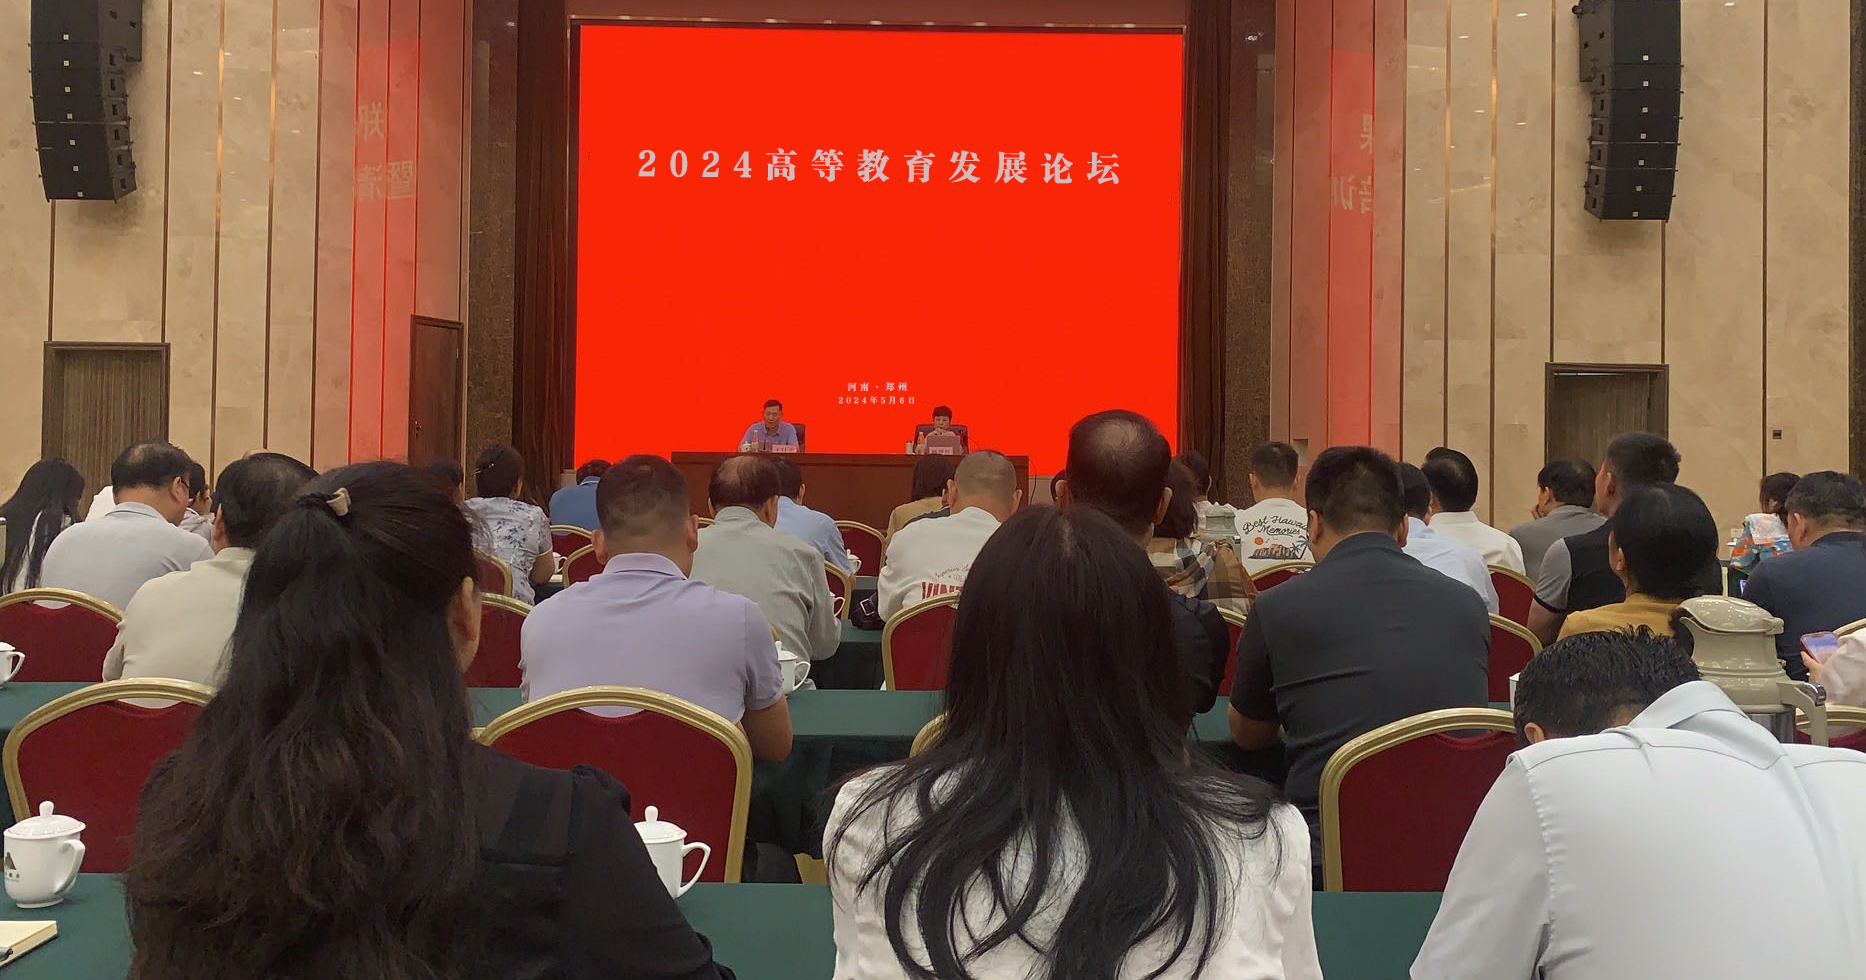 2024年高等教育发展论坛在郑成功举办